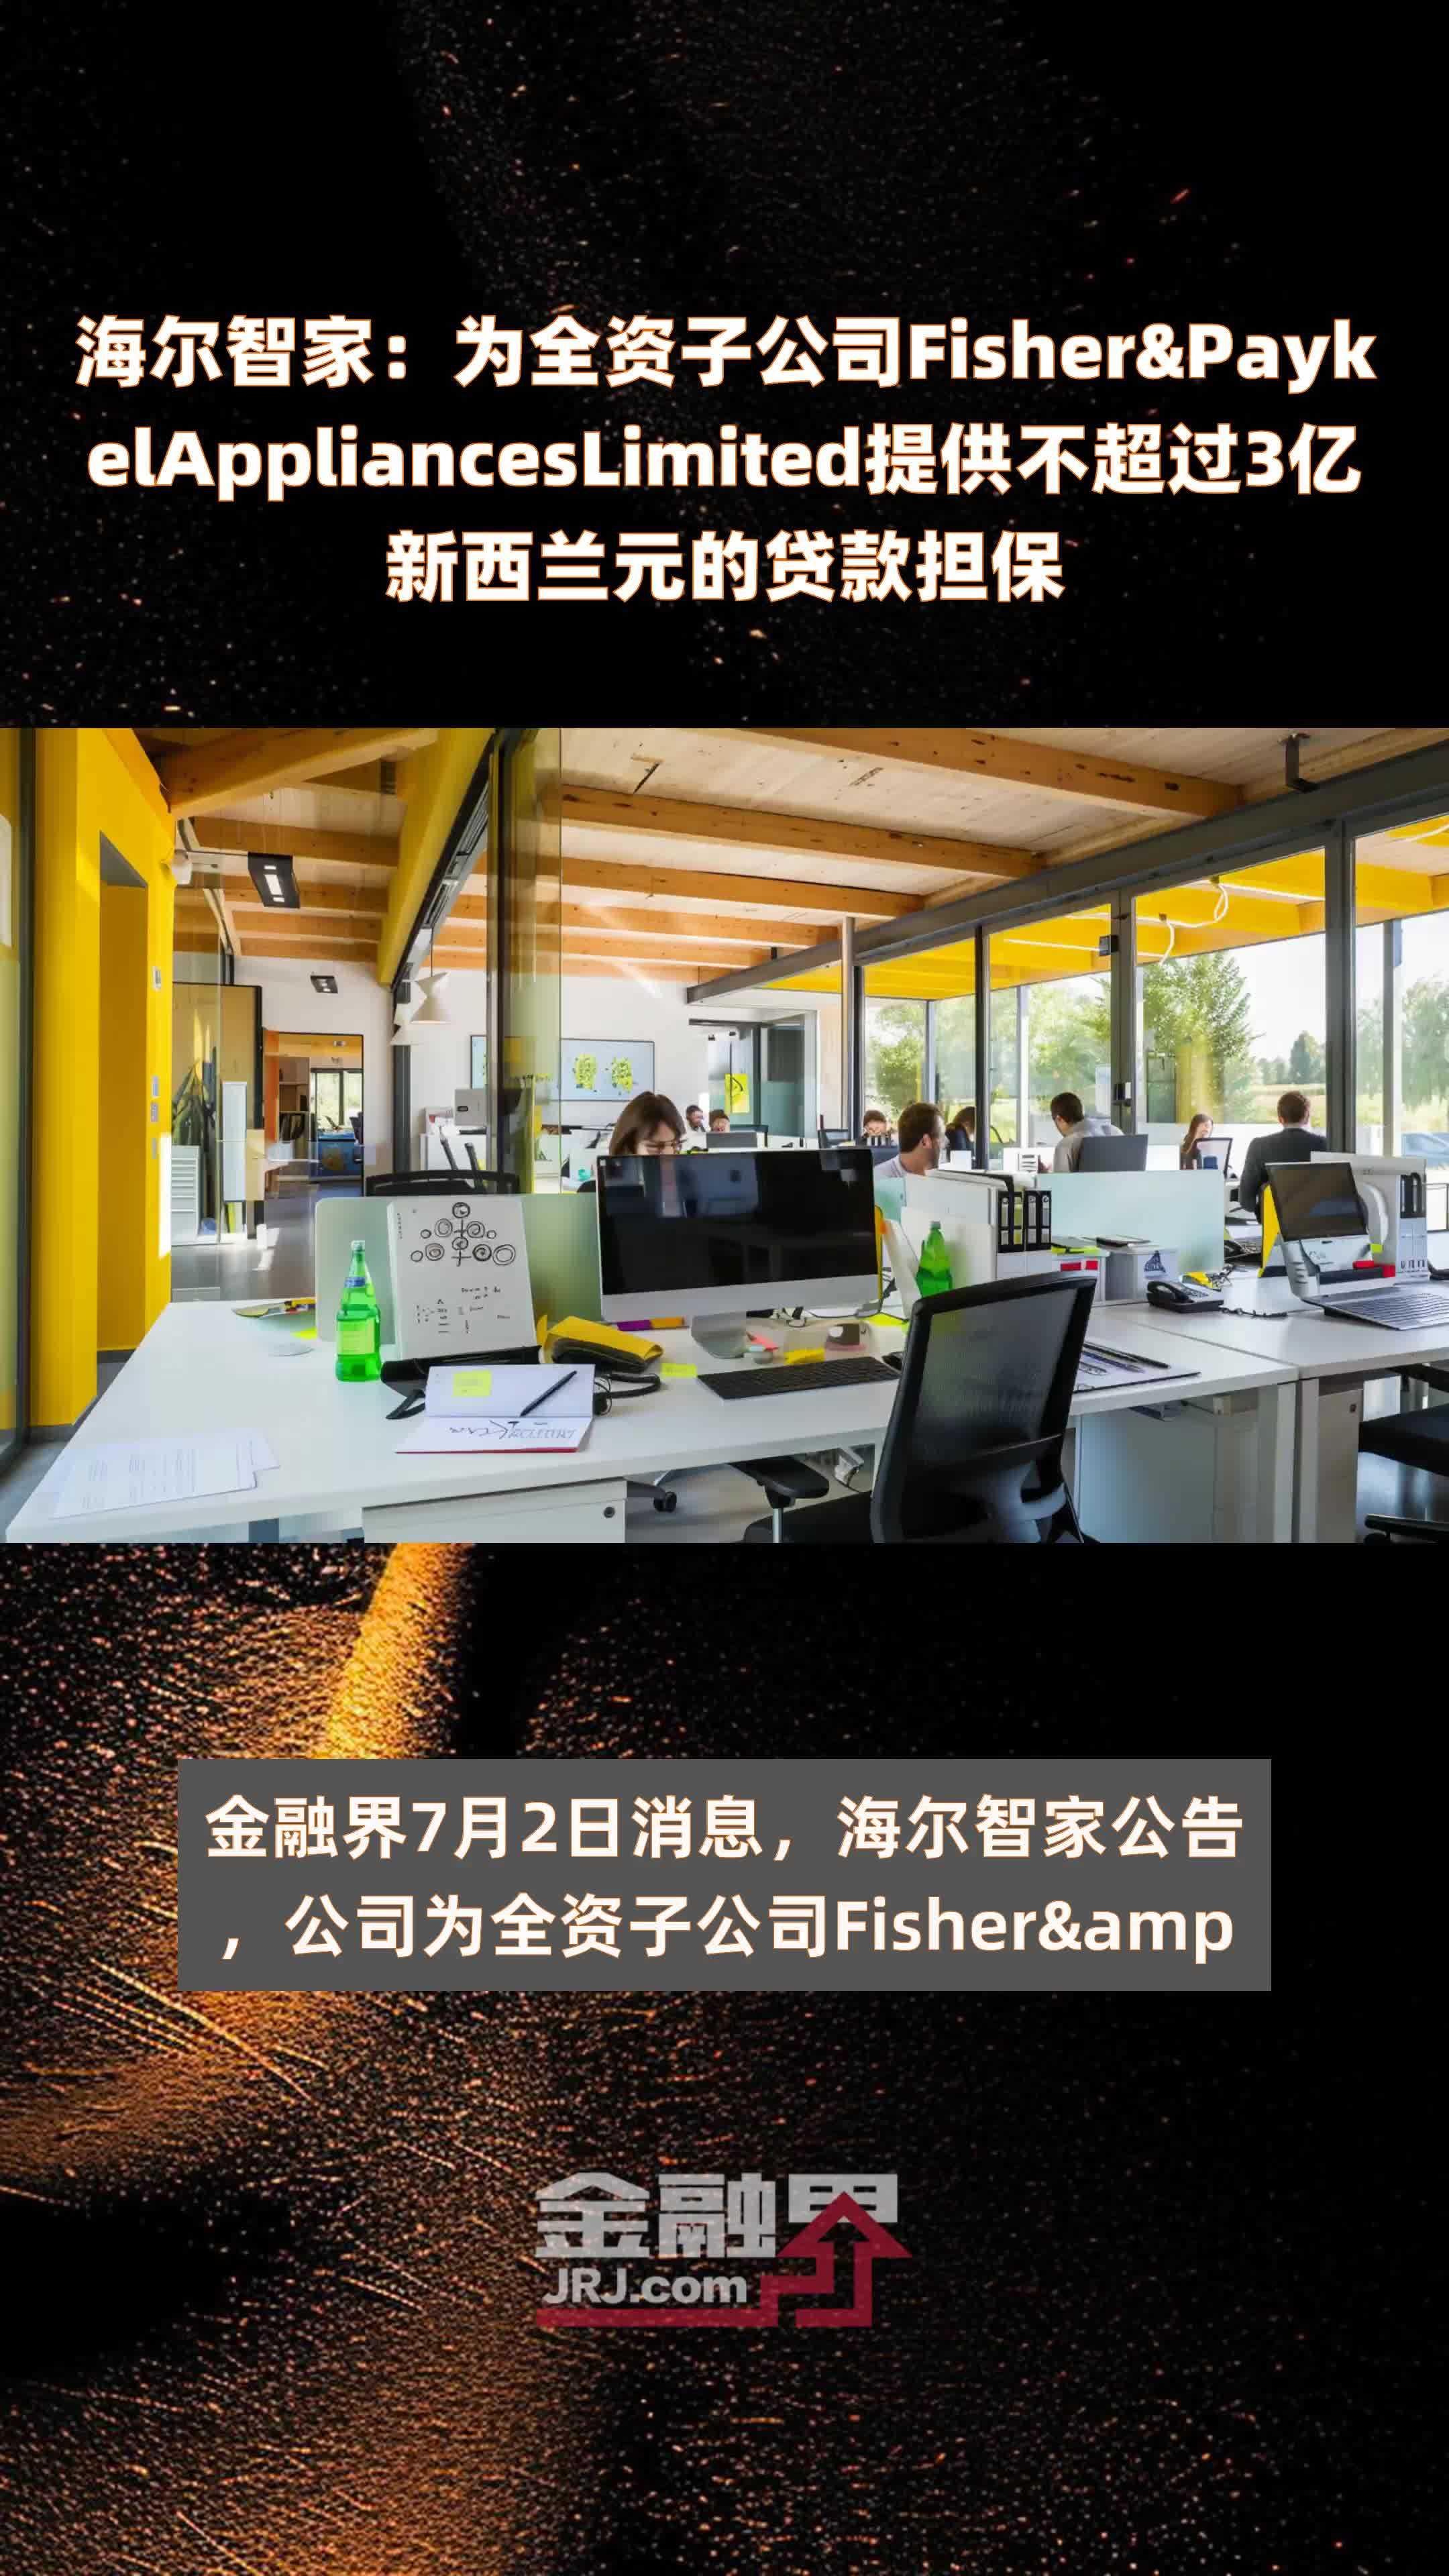 海尔智家为全资子公司fisherpaykelapplianceslimited提供不超过3亿